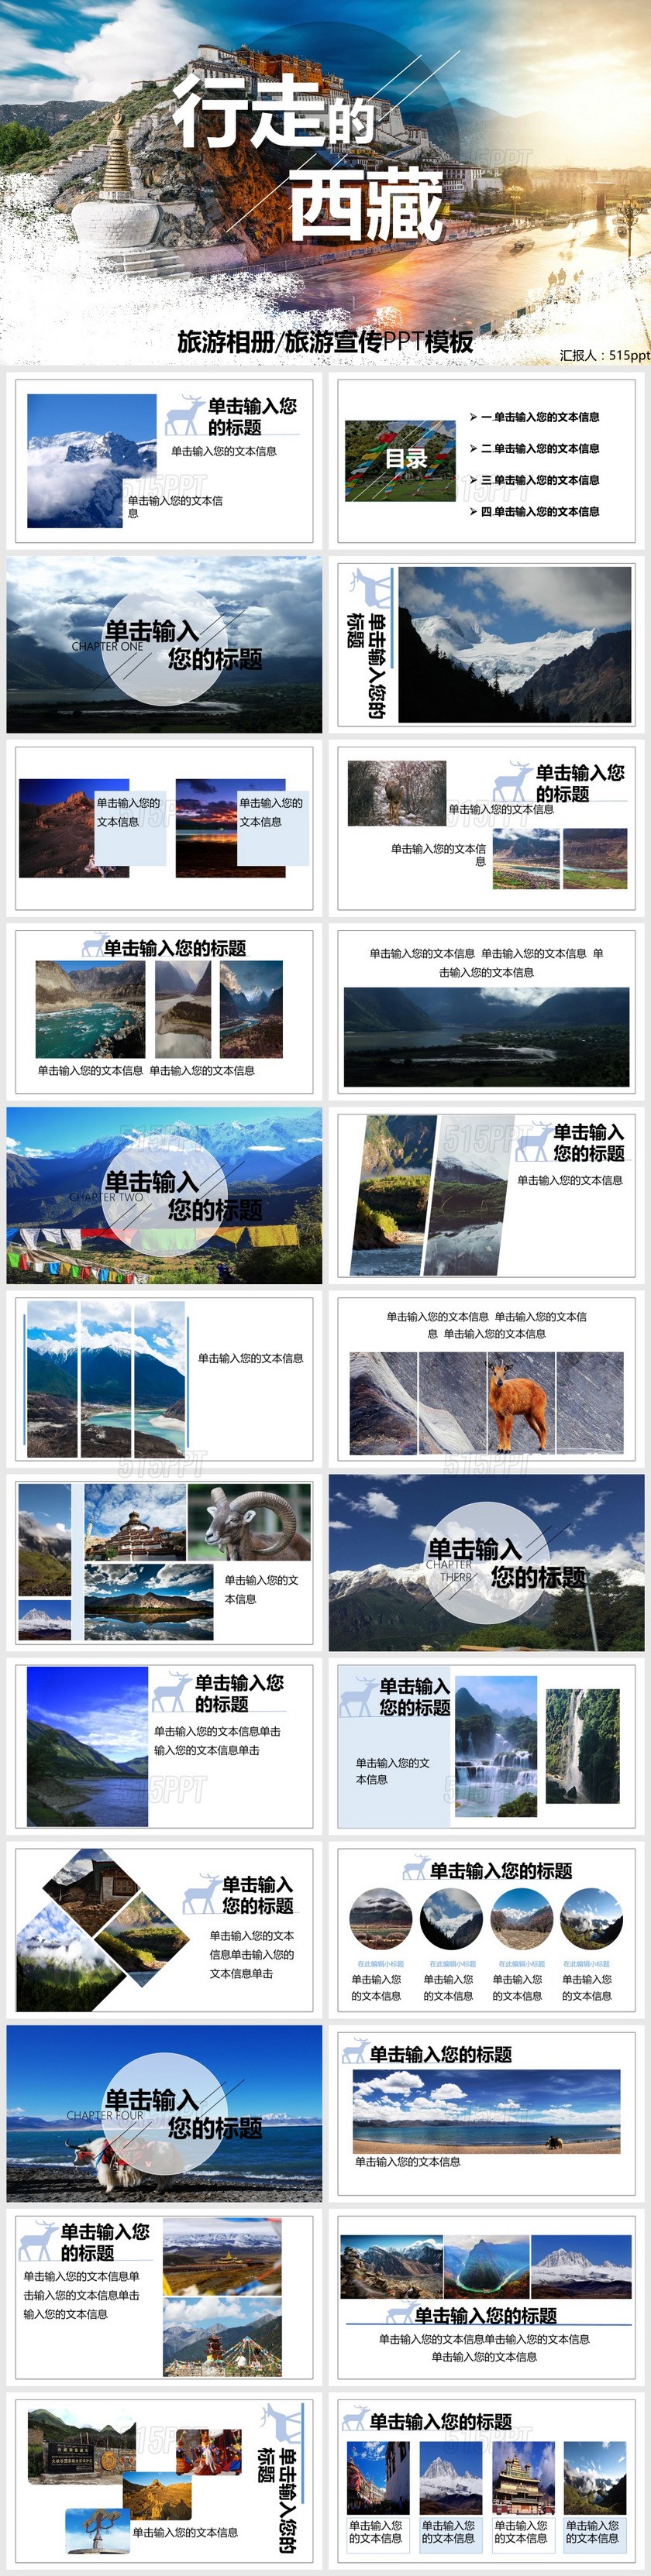 行走的西藏旅游相册旅游宣传PPT模板